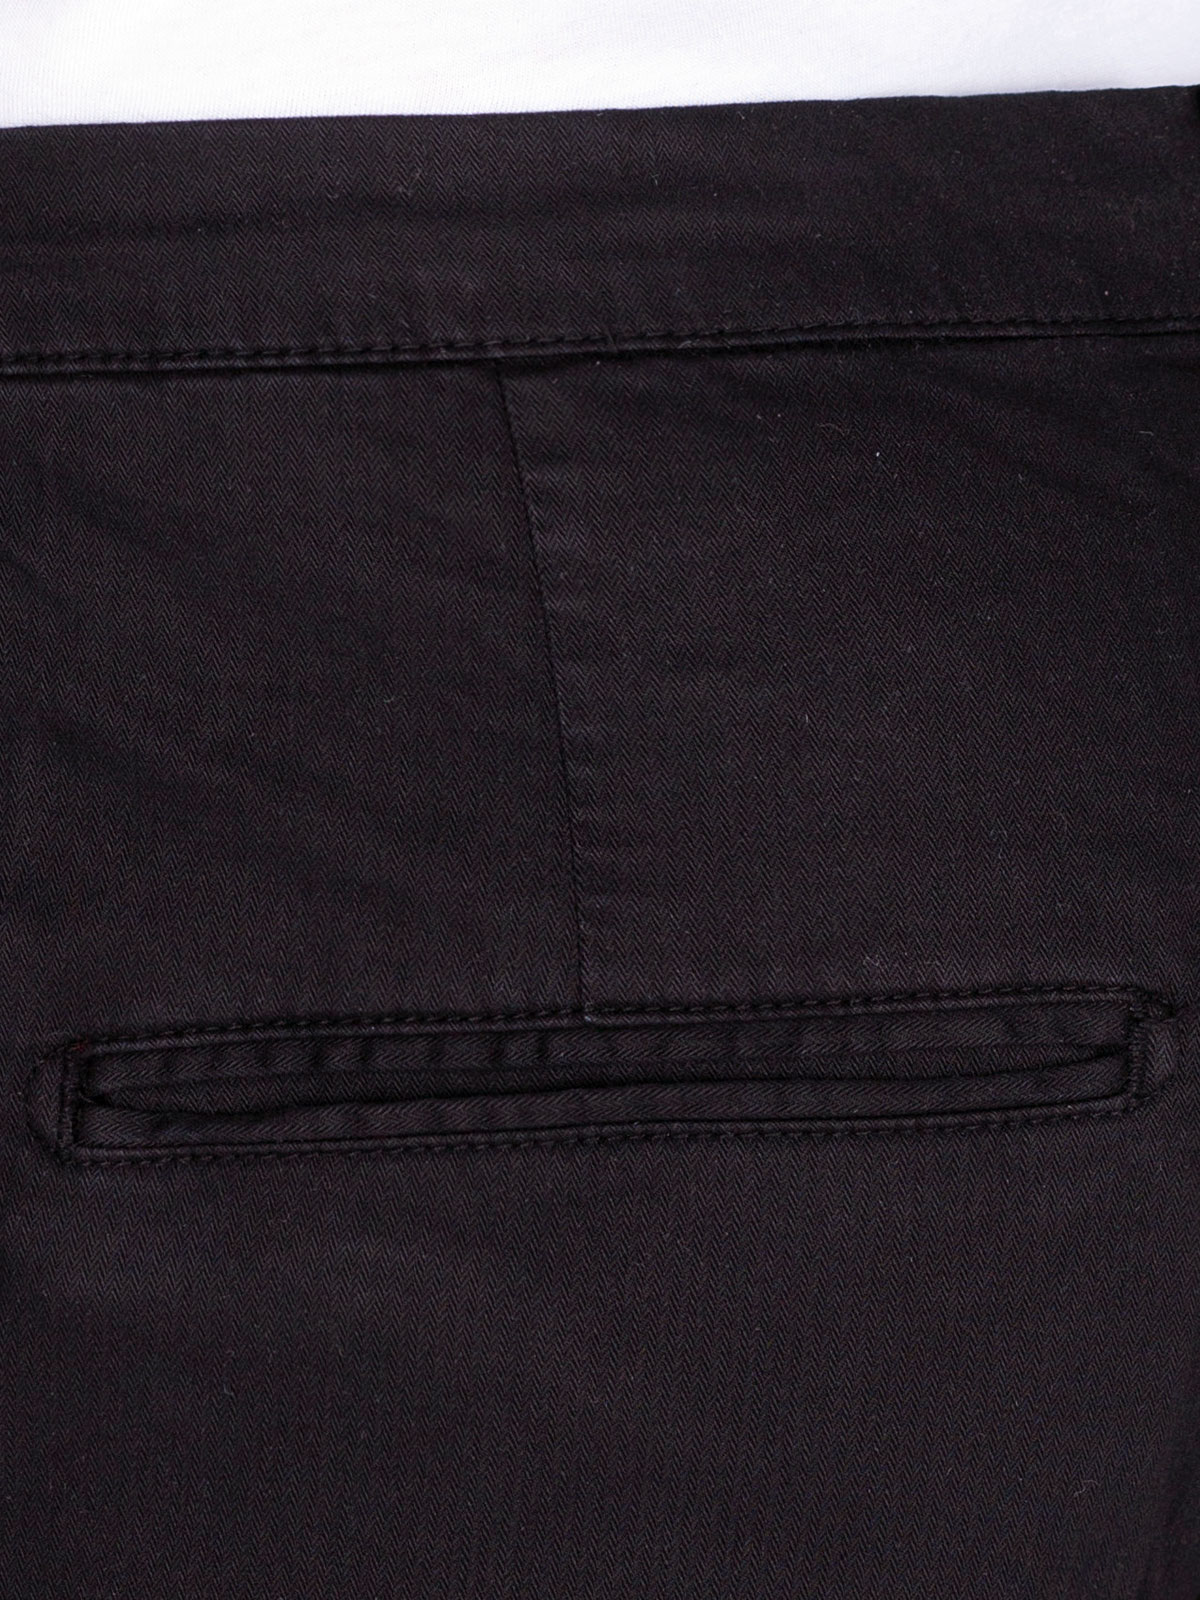 Παντελόνι σε μαύρο χρώμα με κορδόνια - 60284 € 61.30 img4